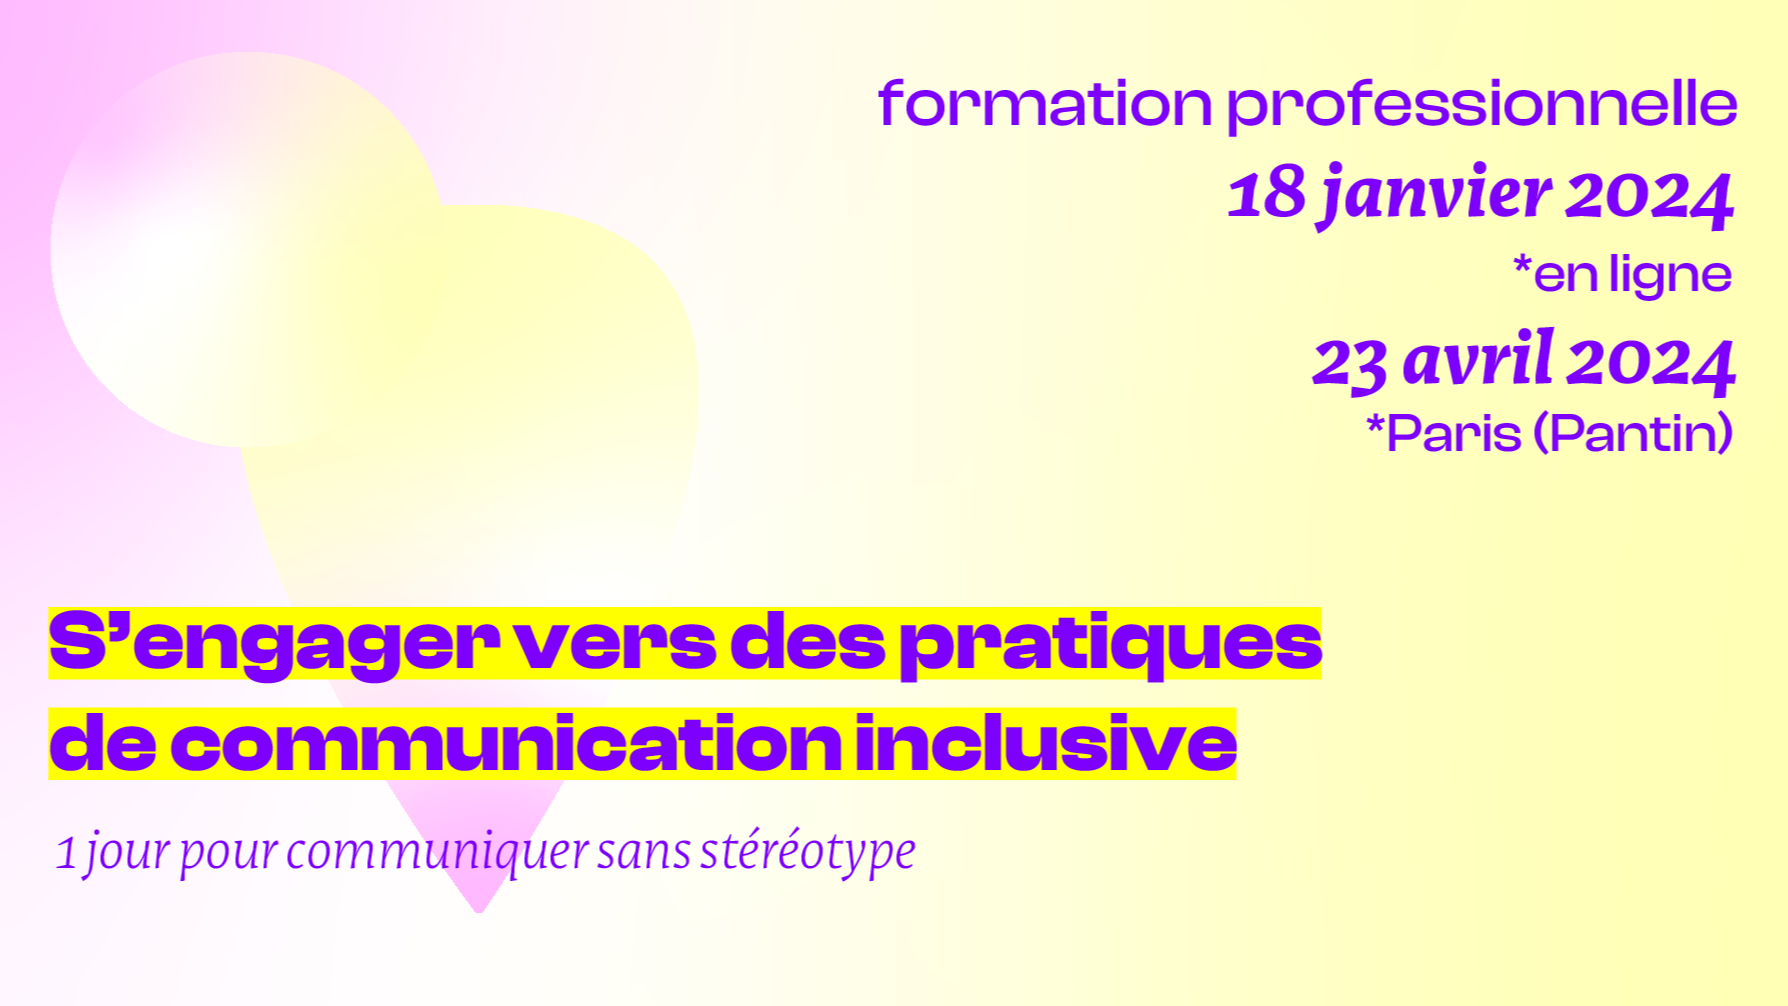 Training representation : S’engager vers des pratiques de communication inclusive - PARIS